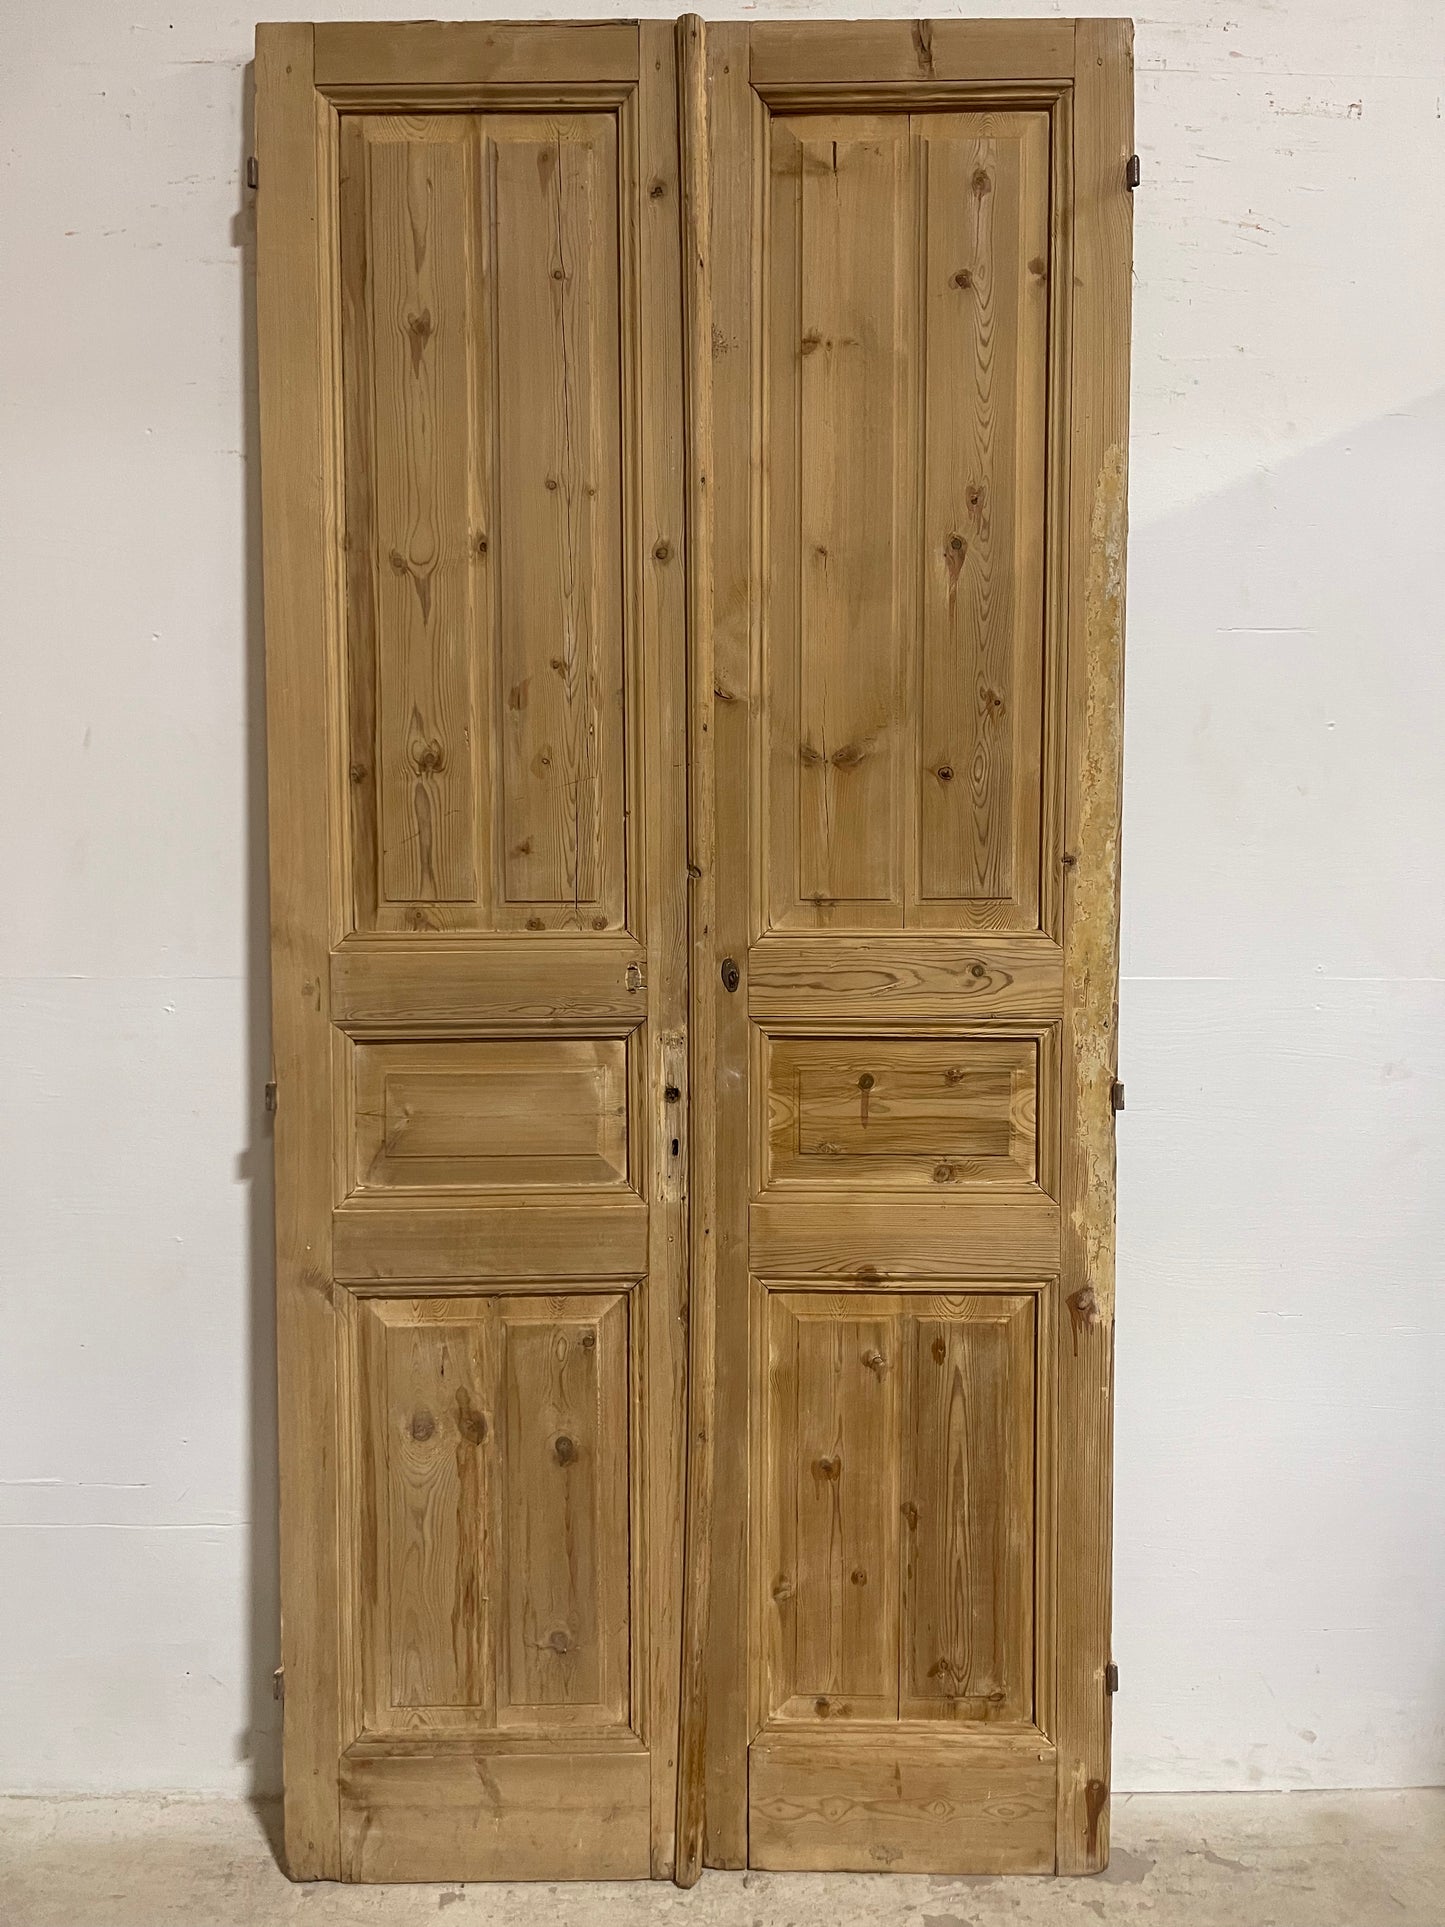 Antique French panel Doors (96.75x44.25) J606